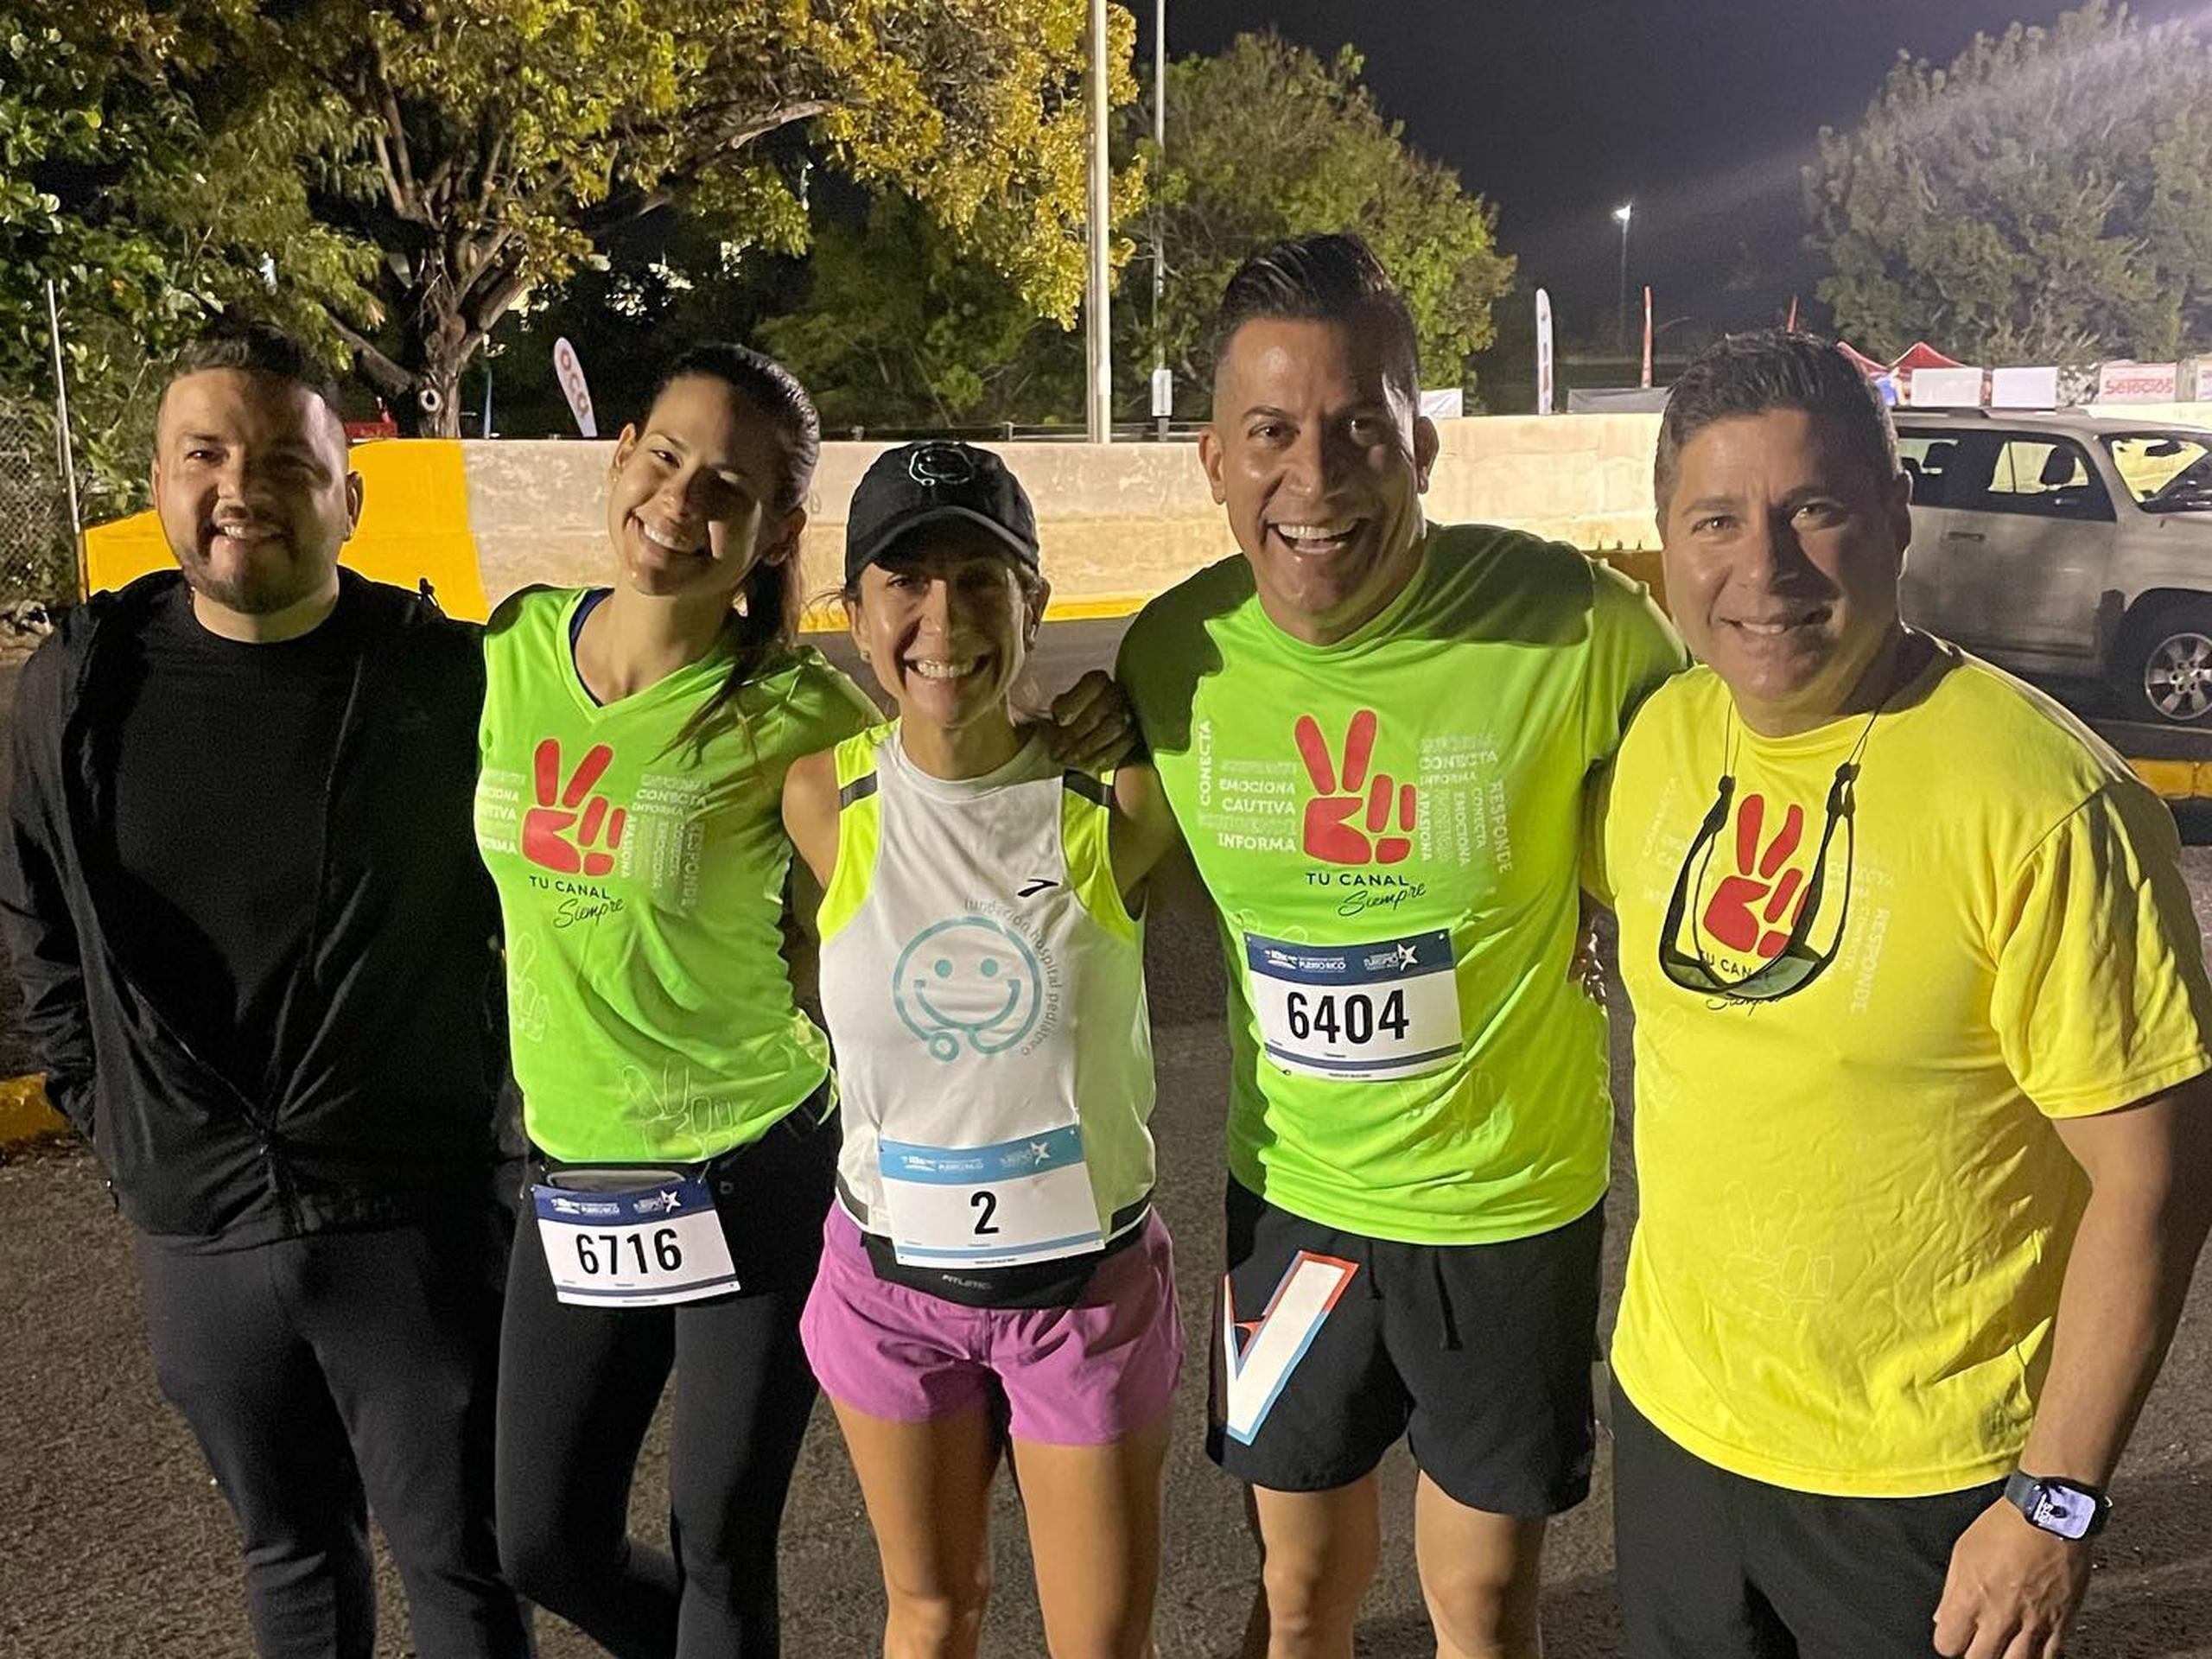 De izquierda a derecha:  El JD, Gil Marie López, Alexandra Fuentes, Alex DJ y Raymond Arrieta, quienes participaron del Puerto Rico 10K Run.